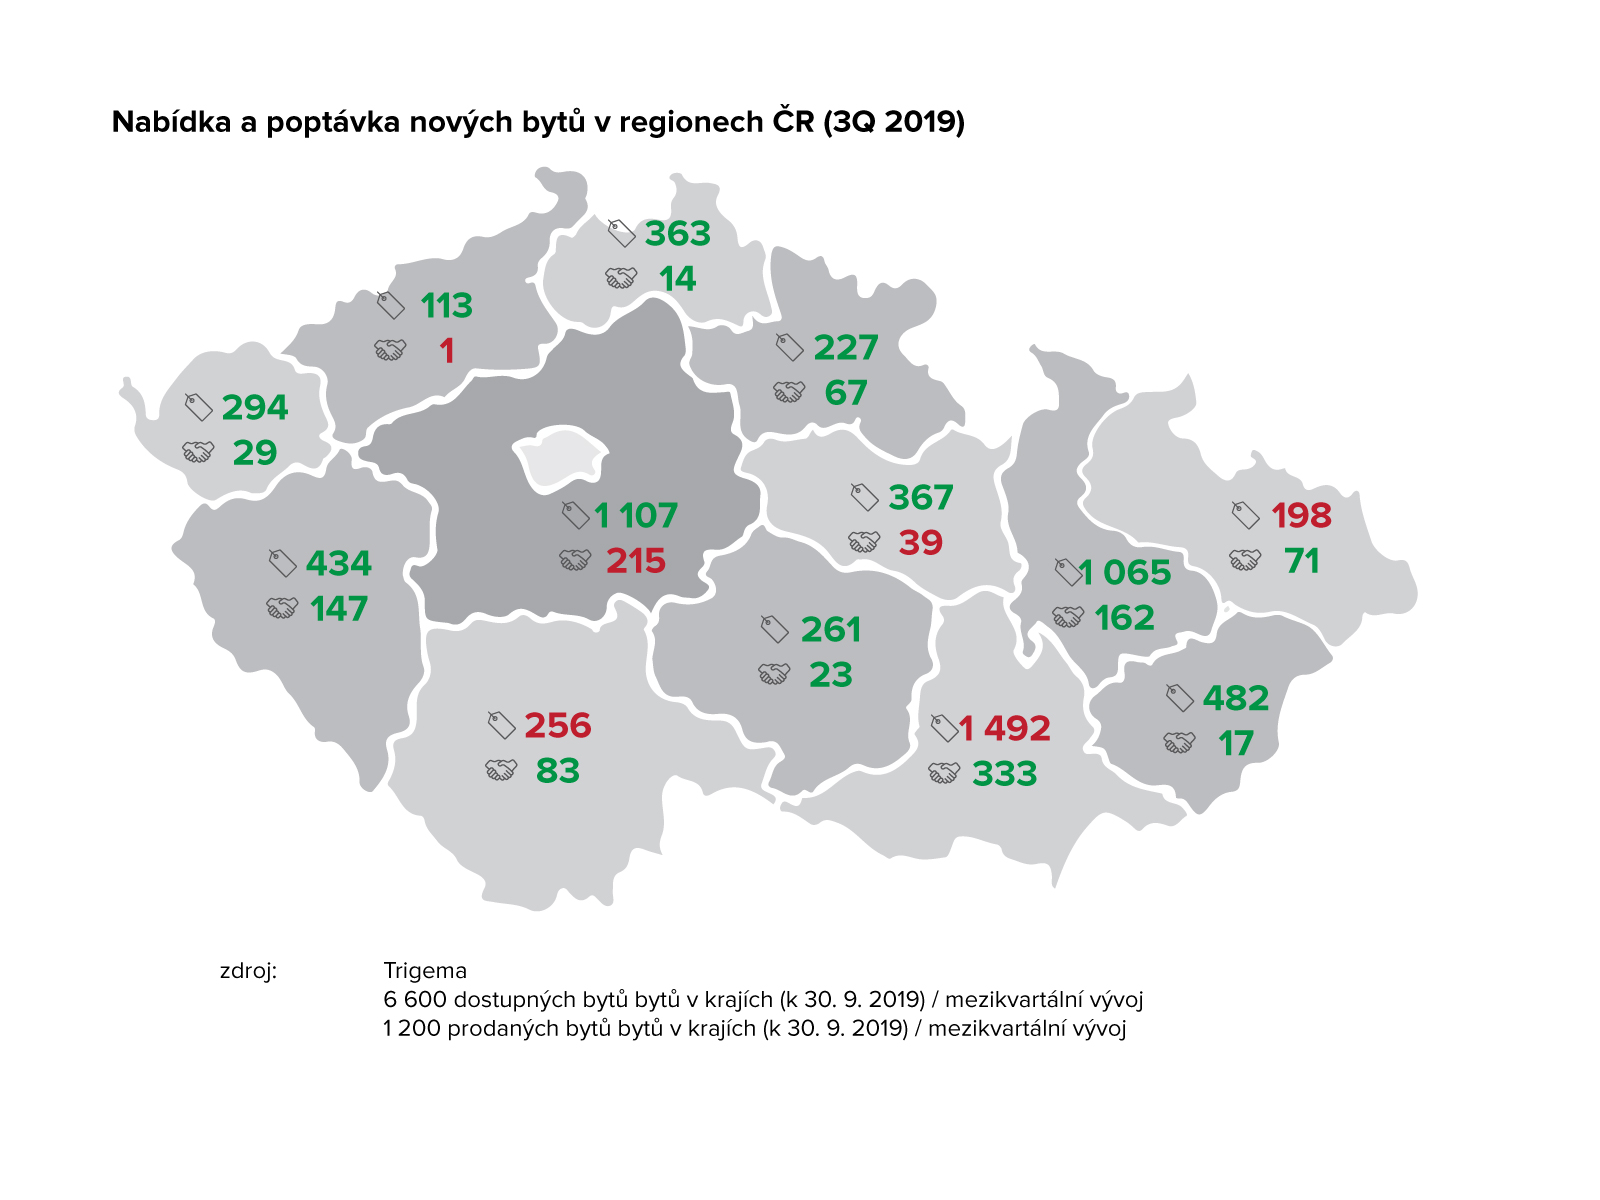 Nabízené nové byty v Praze 2011 - 2019